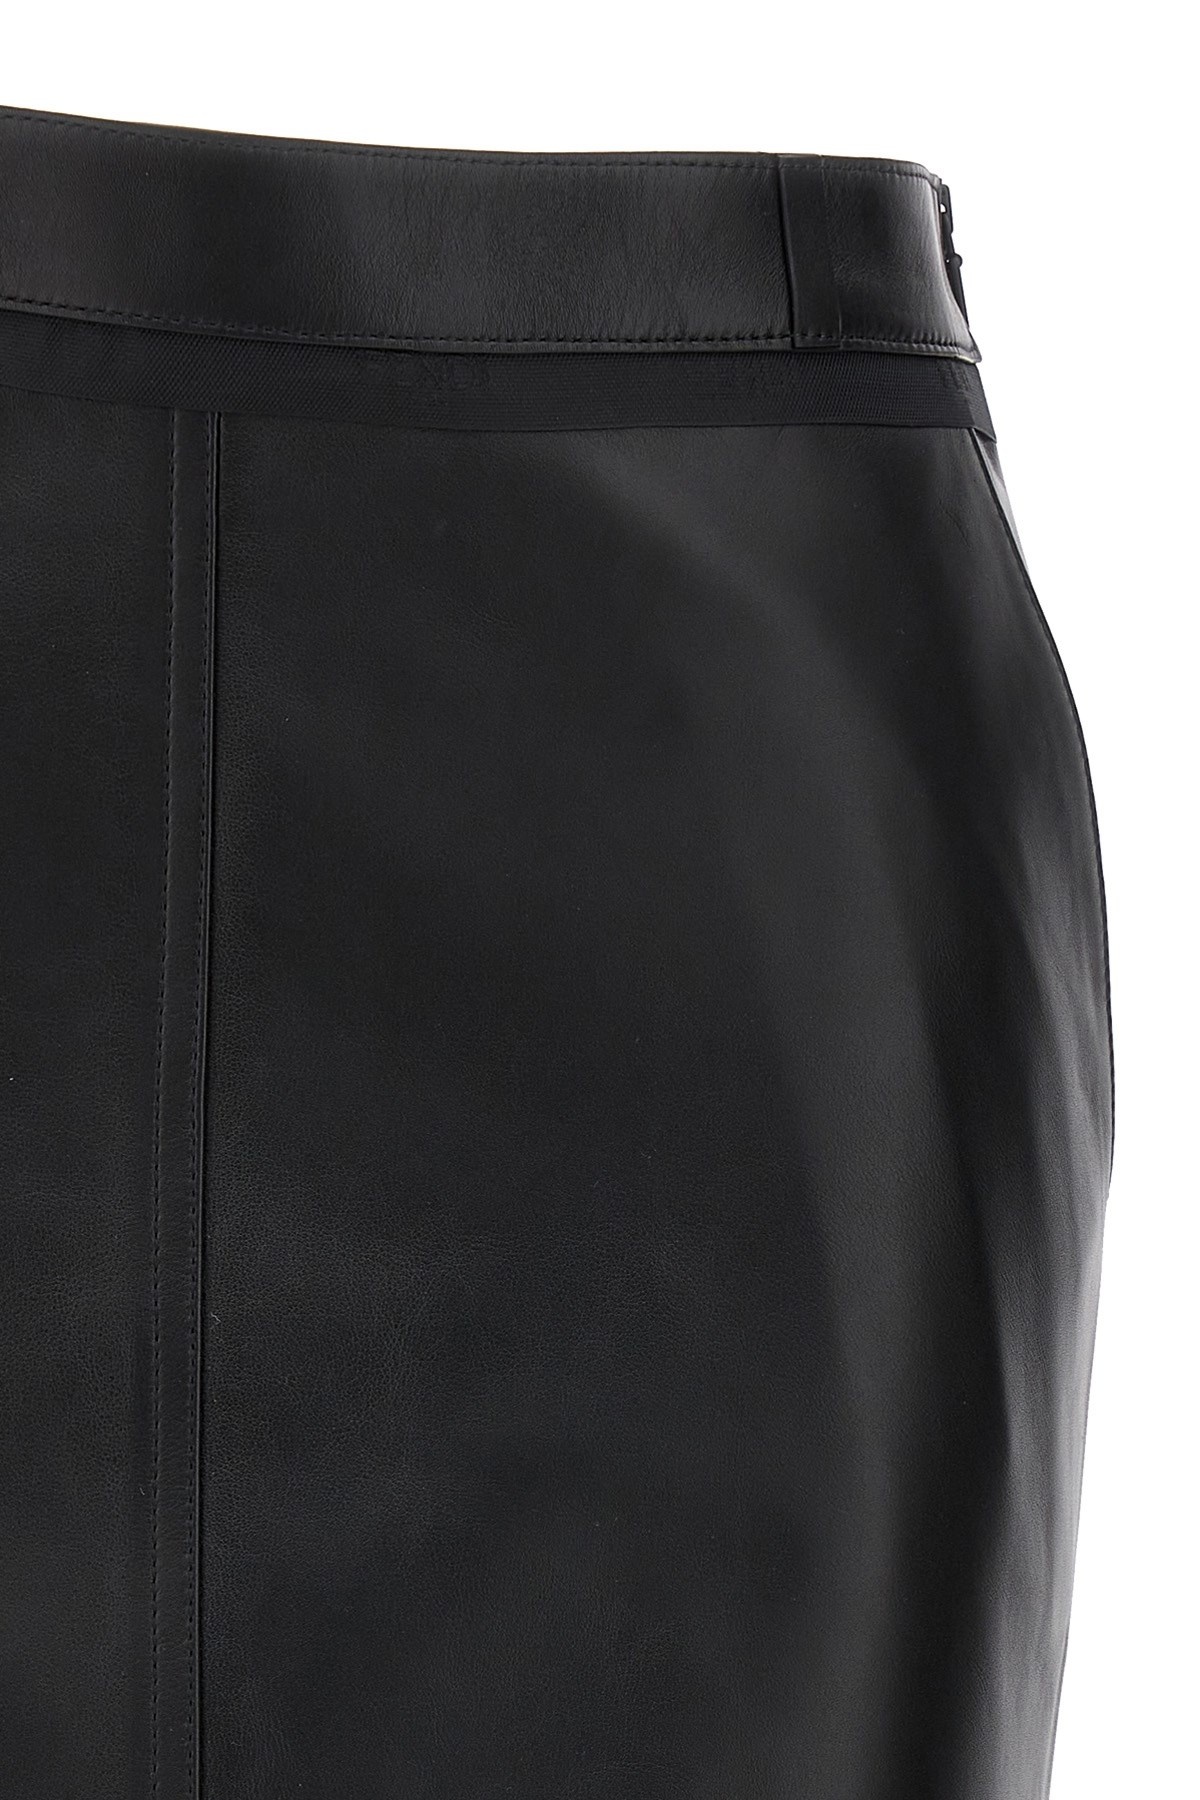 Leather midi skirt - 3